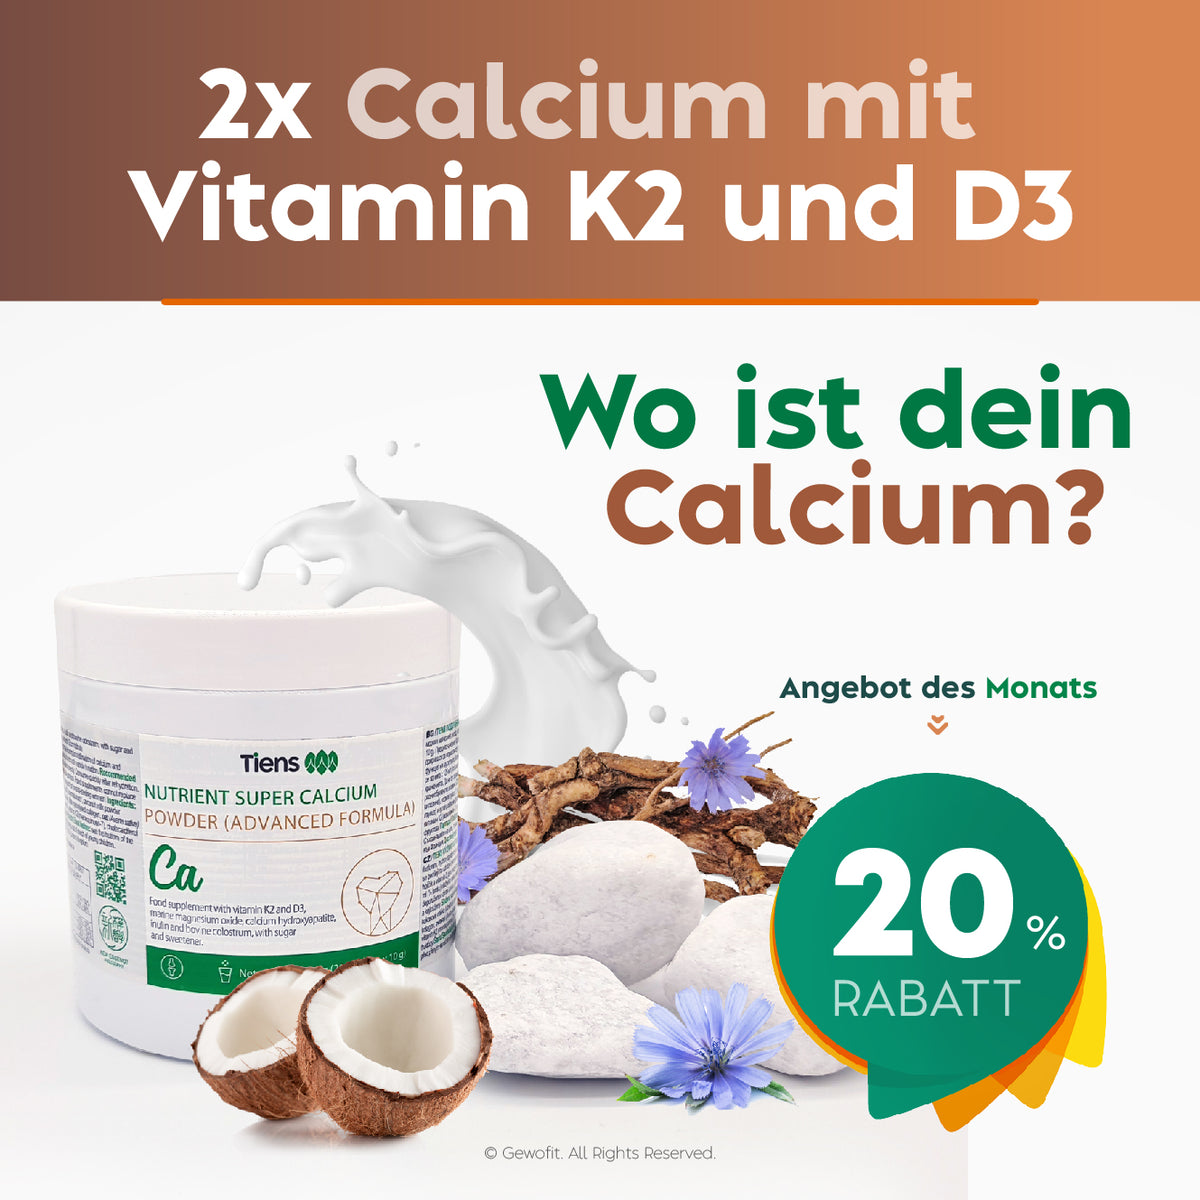 2 X TIENS Calcium Pulver Plus mit Vitamin K2 und D3 Wo ist dein Calcium?